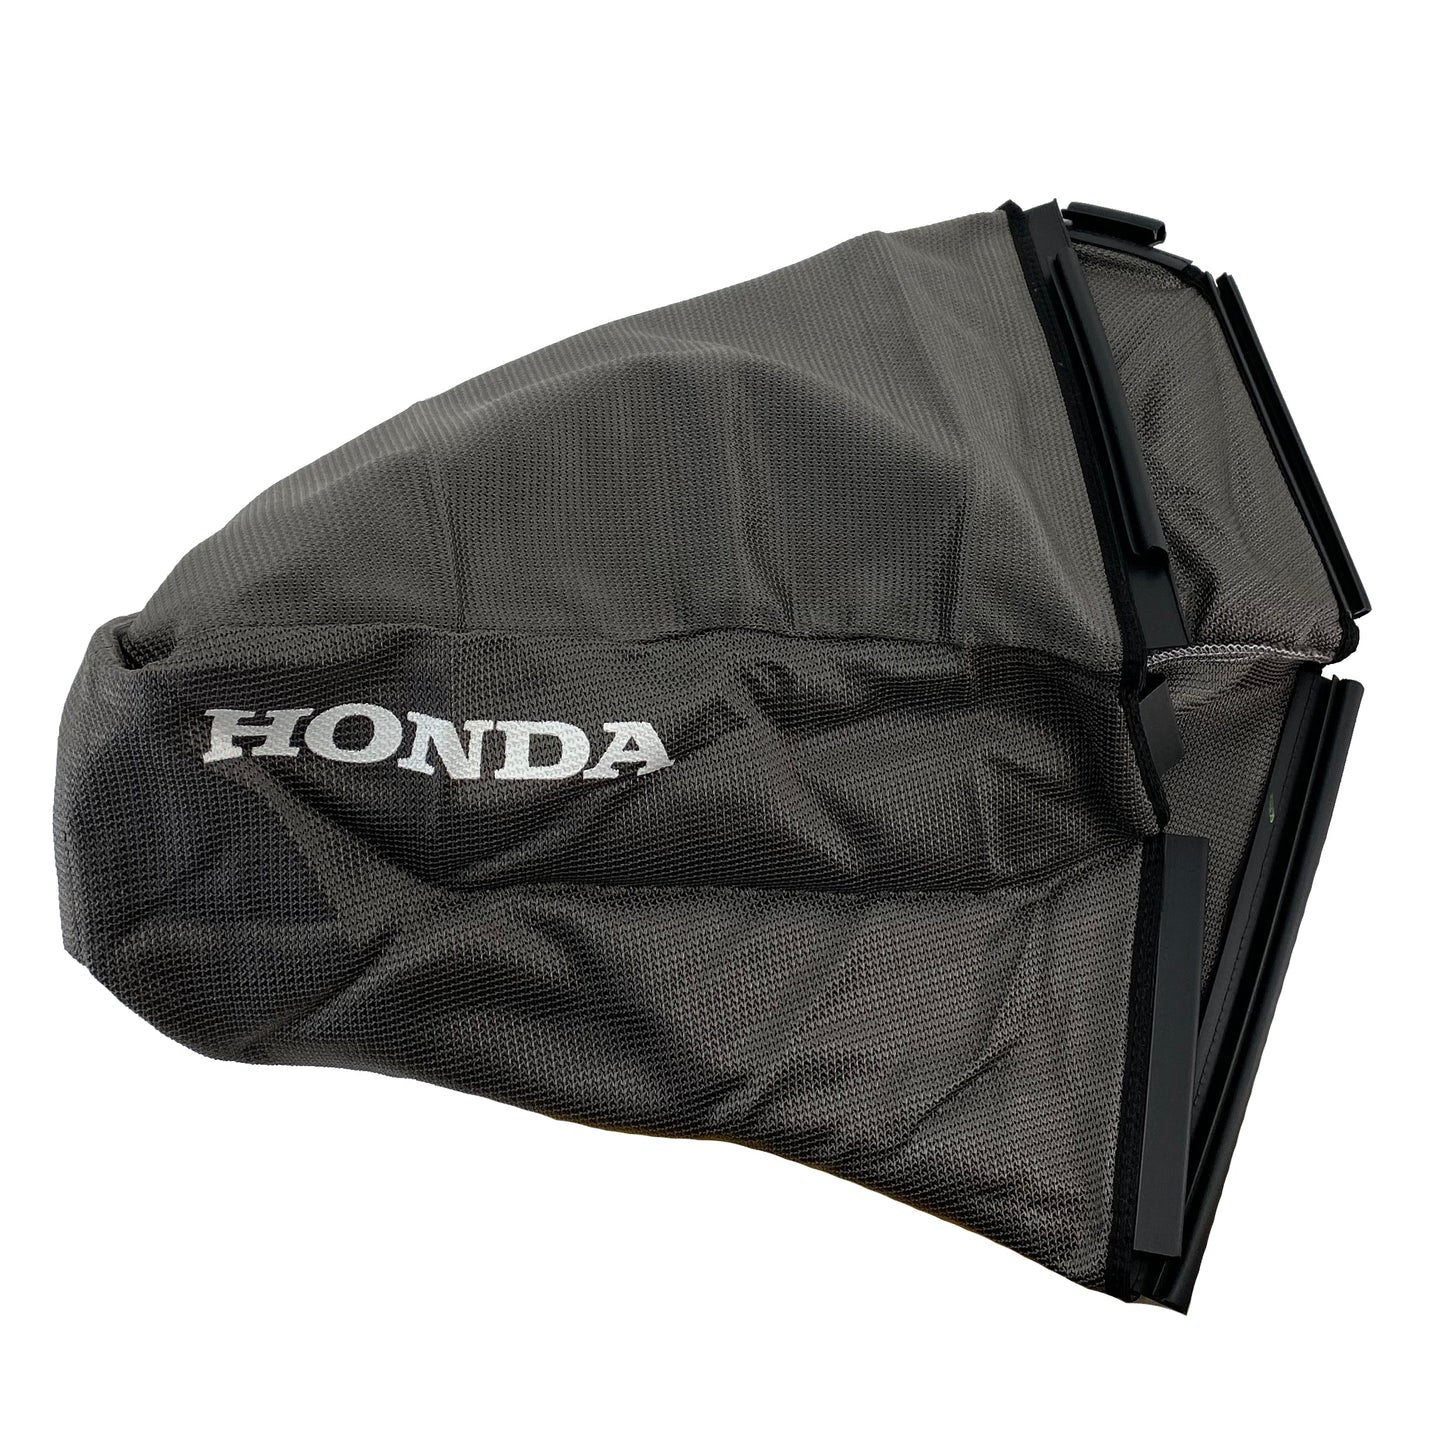 Honda Original Equipment Grass Bag Fabric - 81320-VE1-T10